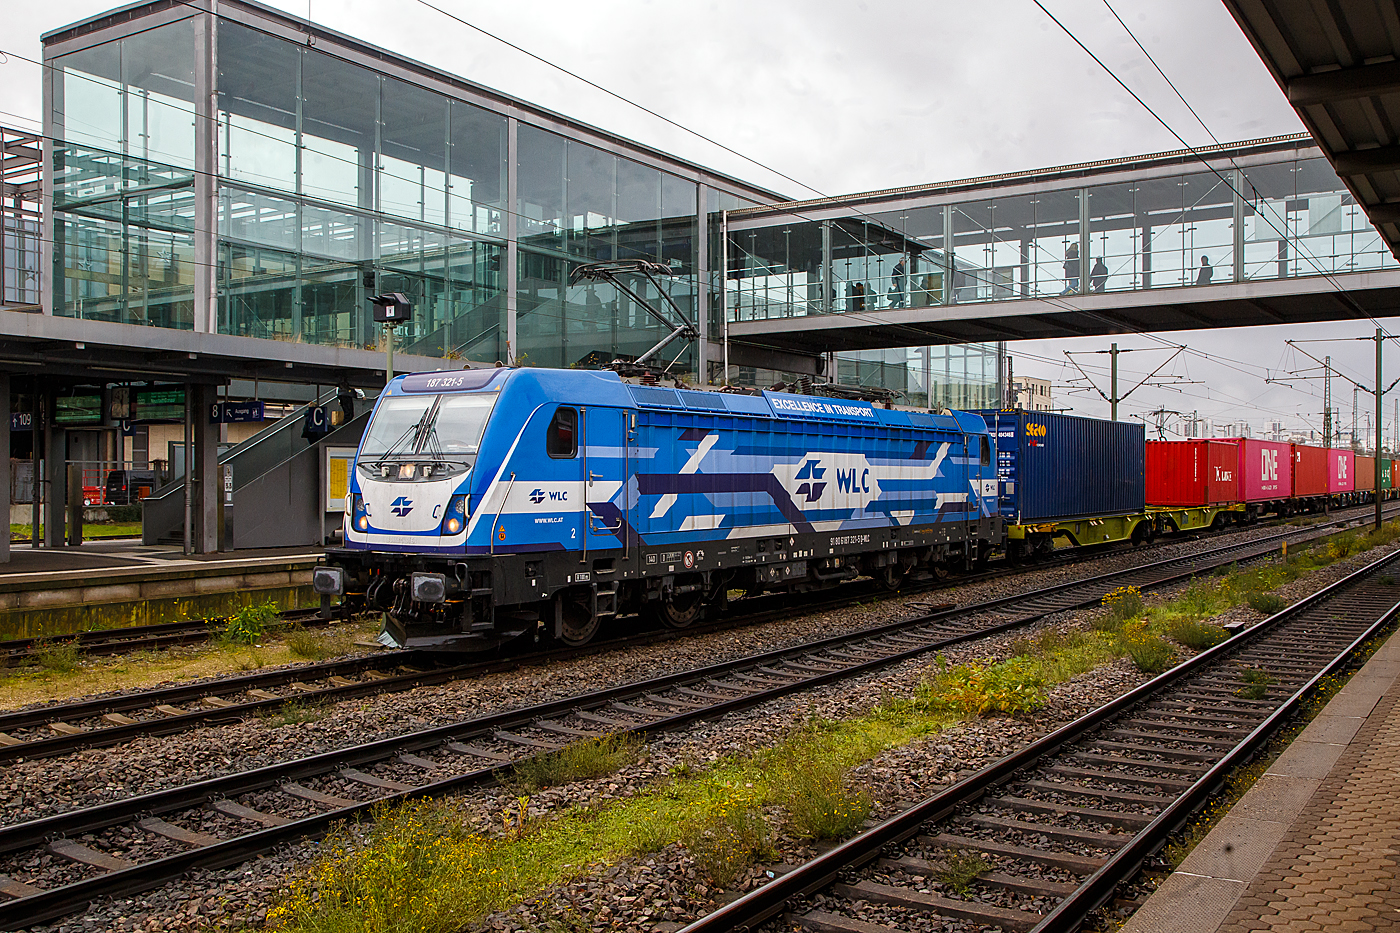 Die 187 321-5 (91 80 6187 321-5 D-WLC) der WLC - Wiener Lokalbahnen Cargo GmbH (Wien) fährt am 24.11.2022 mit einem Containerzug durch den Hauptbahnhof Regensburg.

Die Lok Bombardier TRAXX F140 AC3 LM (zugelassen für 140 km/h daher Variante F140 und nicht F 160). Sie wurde 2017 von Bombardier in Kassel unter der Fabriknummer 35229 gebaut und an die WLC - Wiener Lokalbahnen Cargo GmbH (Wien). Nach meiner Sichtung hat die Lok die Zulassung für Deutschland (D) und Österreich (A). Für Ungarn und Rumänien sind die Zulassungen noch nicht erteilt (H und RO sind durchgestrichen).

Wie die Vorgängerinnen AC1 und AC2 ist die AC3 für den Betrieb unter 15 Kilovolt bei 16,7 Hertz, sowie unter 25 Kilovolt bei 50 Hertz Wechselstrom ausgelegt, und verfügt unverändert über eine Dauerleistung von 5.600 kW ( Power Boost  von 6.000 kW) und eine Anfahrzugkraft von 300 kN. Von den Traxx 2E übernommen wurde der Maschinenraum mit Seitengang um das sogenannte Powerpack, bestehend aus Stromrichter und Hochspannungsgerüst, womit erstmals alle Varianten dasselbe Layout verwenden.

Neu ist die Kopfform der Traxx-3-Lokomotiven, im Wesentlichen ein auf dem Lokkasten aufgesetztes GFK-Modul. Zudem wurden die Lokomotiven erstmals ab Werk konstruktiv für den Einbau der Zugbeeinflussung ETCS vorbereitet. Neuerungen betreffen die verfügbaren Drehgestelle: zu den bisherigen Varianten „F140“ mit Tatzlagerantrieb und Zulassung für maximal 140 km/h, und „P160“ mit Hohlwellenantrieb und Zulassung für maximal 160 km/h, werden die Traxx-3-Lokomotiven offiziell auch als Variante „F160“ mit Tatzlagerantrieb und Zulassung für maximal 160 km/h angeboten. Es gibt sie also als TRAXX F140 AC3 und als TRAXX F160 AC3.

Gänzlich neu sind die optional verfügbaren Last-Mile-Module, die es als Last-Mile-Diesel (LMD) mit zusätzlicher Last-Mile-Battery (LMB) gibt. Das LMD besteht aus einem Dieselhilfsmotor und einem Kraftstofftank, um auch nicht-elektrifizierte Streckenabschnitte und Anschlussgleise befahren zu können. Der Dieselmotor von Deutz verfügt über einen Hubraum von 7.150 cm³, erbringt eine Leistung von 230 kW (180 kW am Rad), mit Batterieunterstützung 290 kW und erfüllt die Stage-IIIB-Abgasnorm. Im Dieselbetrieb werden alle vier Fahrmotoren betrieben, die Anfahrzugkraft beträgt dabei mit Batterieunterstützung unverändert 300 kN, ohne Batterie 260 kN. Ohne Anhängelast ist damit eine Höchstgeschwindigkeit von 60 km/h möglich, bei 2000 Tonnen Last noch 40 km/h. Der Tankinhalt von 400 Litern reicht für bis zu acht Stunden Dieselbetrieb, kurze Strecken können auch ausschließlich mit der eingebauten Batterie zurückgelegt werden. Der Übergang vom elektrischen zum Dieselbetrieb kann während der Fahrt erfolgen. Für den Rangierbetrieb ist zudem eine Funkfernsteuerung erhältlich.

Erstmals wurde der Lokkasten nicht mit glatten Seitenwänden gefertigt, sondern konstruktiv deutlich günstiger, sind die Seitenwände der AC3 vertikal gesickt und die Seitenflächen erhielten sogenannte Flex-Panels, eine Vorrichtung zum Einspannen von Planen. Diese würden die Sicken verdecken, und wären kostengünstiger als Umlackierungen oder Umbeklebungen. Die Nutzung der Flex-Panels wurde jedoch in der Schweiz umgehend untersagt.

TECHNISHE DATEN:
Hersteller: 	Bombardier Transportation
Spurweite: 	1.435 mm (Normalspur)
Achsanordnung: Bo’ Bo’
Länge über Puffer: 18.900 mm
Drehzapfenabstand: 10.440 mm
Achsabstand im Drehgestell: 2.600 mm
Treibraddurchmesser: 	1.250 mm (neu) / 1.170 mm (abgenutzt)
Höhe:  4.283 mm
Breite:  2.977 mm
Lichtraumprofil: UIC 505-1
Dienstgewicht: 87 t
Fahrmotoren: 4 Asynchronmotoren
Bremse: Elektrische Bremse (SW-GPR-E mZ)

Daten im Oberleitungsbetrieb:
Höchstgeschwindigkeit: 160 km/h
Dauerleistung: 5.600 kW 
Kurzzeitleistung  Power Boost : 6.000 kW
Anfahrzugkraft: 300 kN
Dauerzugkraft: 252 kN bei 80 km/h
Stromsystem: 15 kV 16,7 Hz~ und 25 kV 50 Hz~

Daten im Dieselbetrieb (Last-Mile):
Nenndrehzahl: 1.800 U/min
Höchstgeschwindigkeit: 60 km/h
Dauerleistung: 320 kW (Quelle WLC)
Tankinhalt:  400 l
